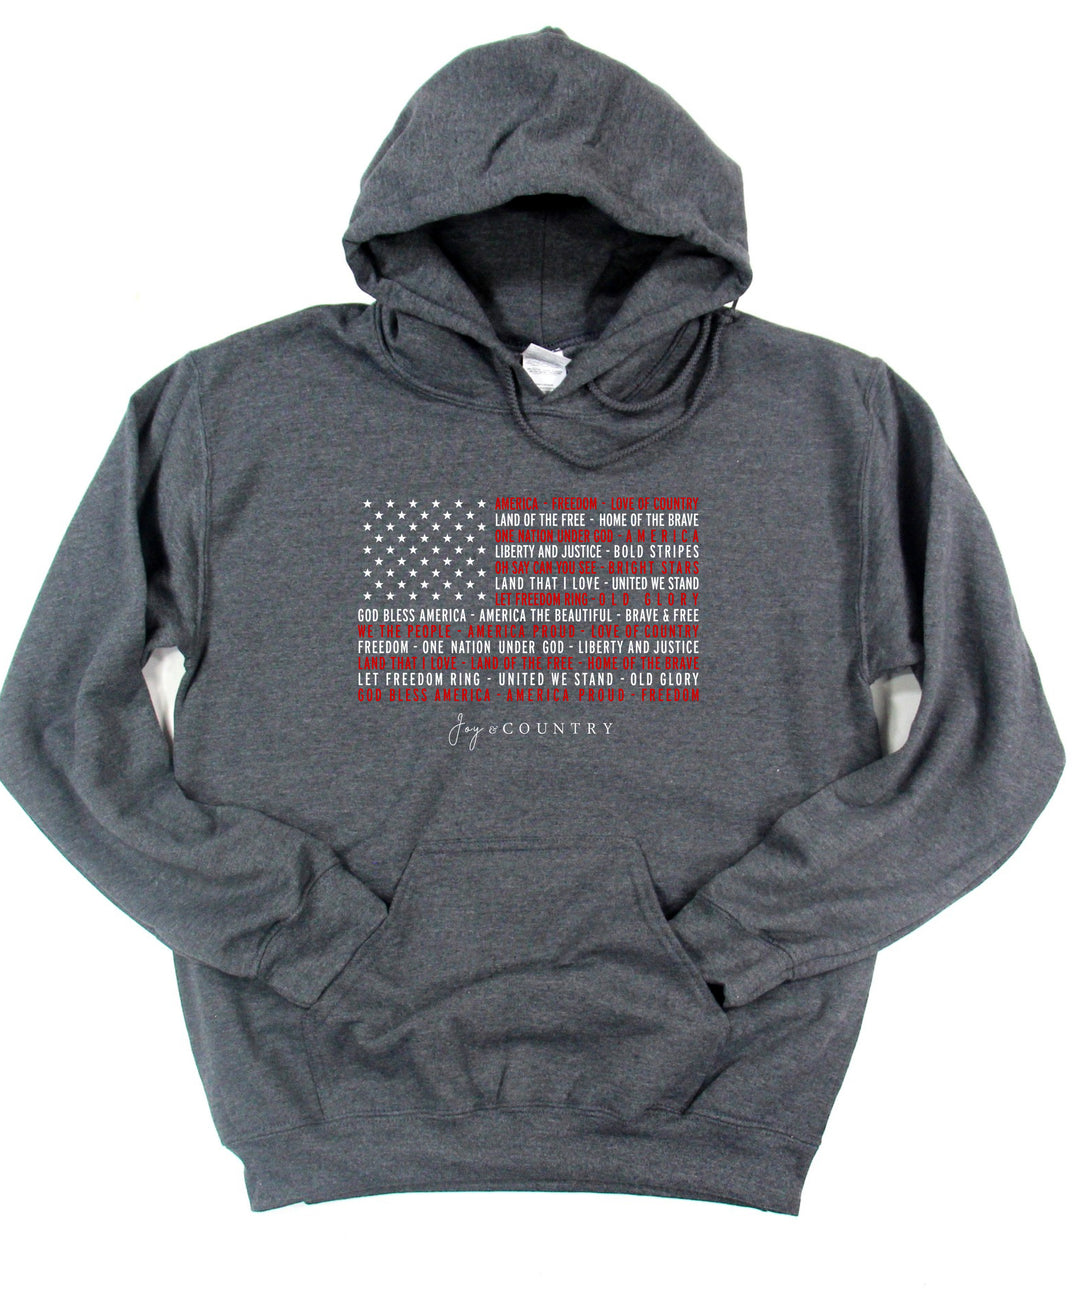 We Love America - Unisex Hoodie Sweatshirt - Joy & Country